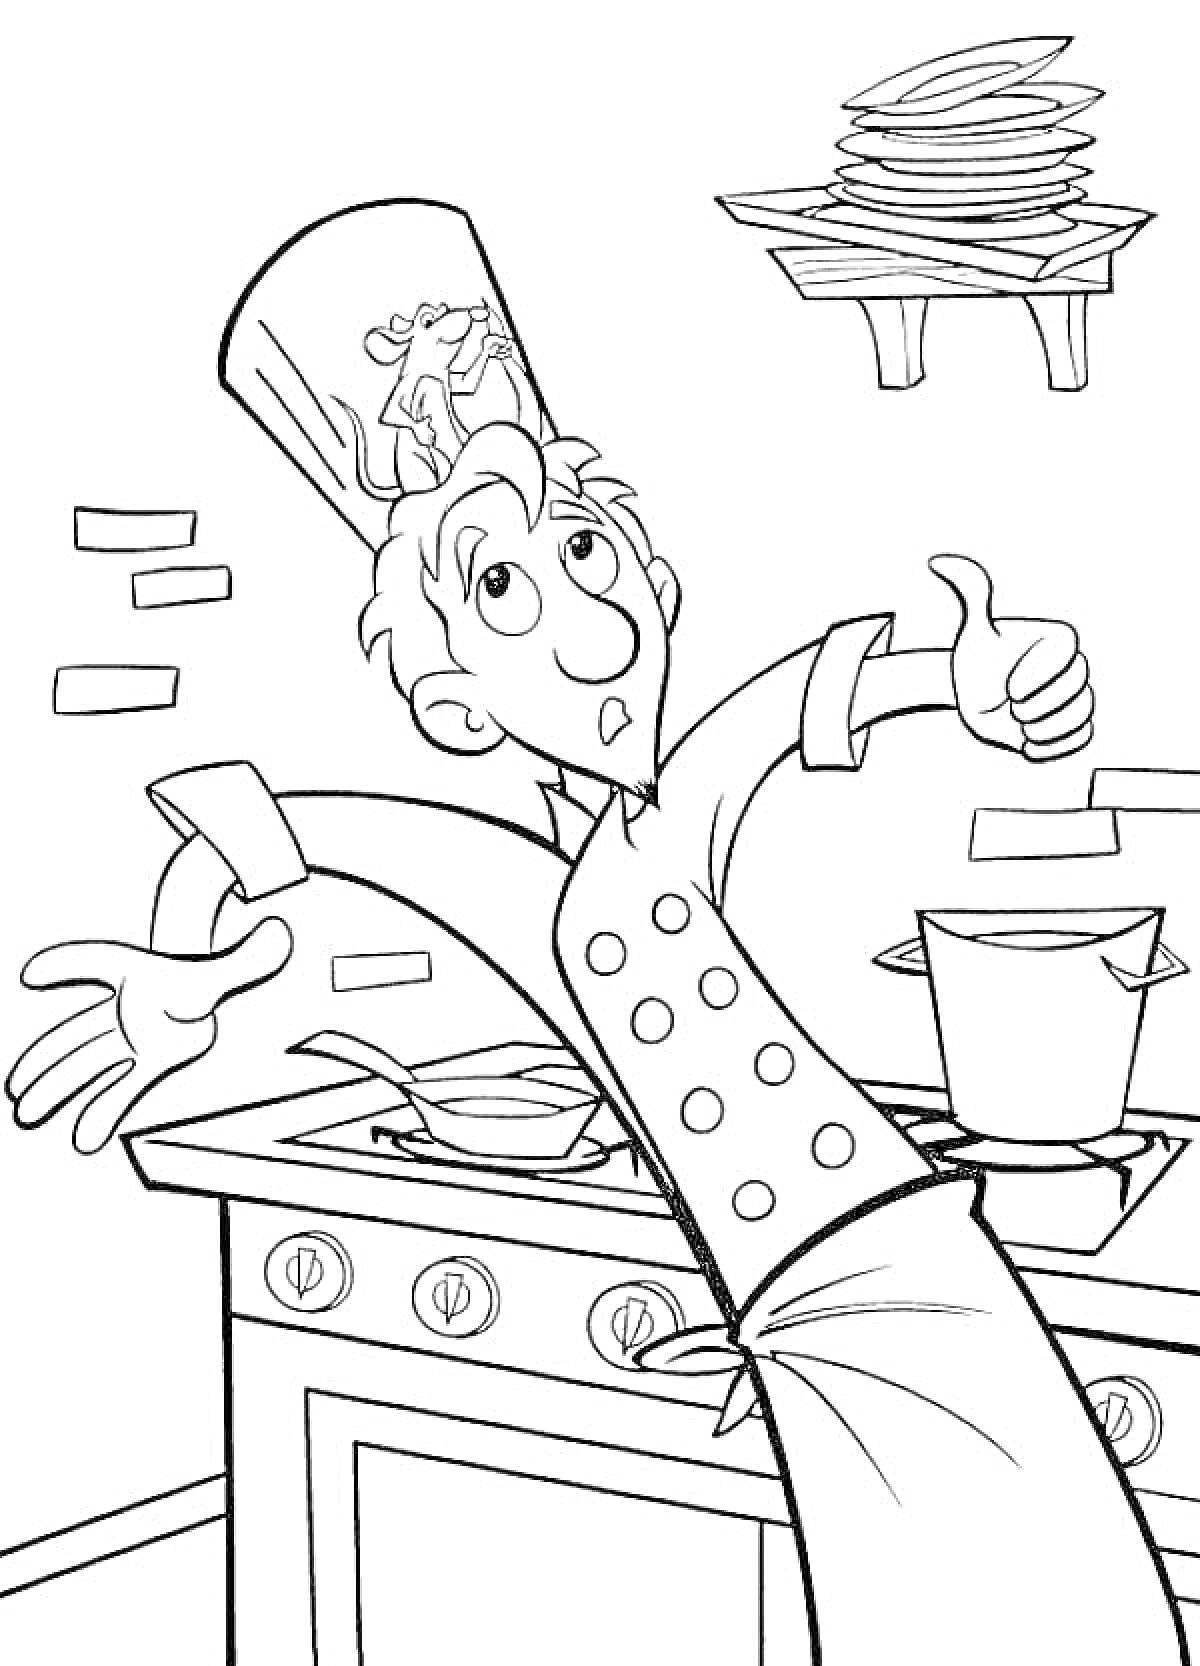 Шеф-повар на кухне с крысой под поварским колпаком, плита с кастрюлями, стопка тарелок на полке